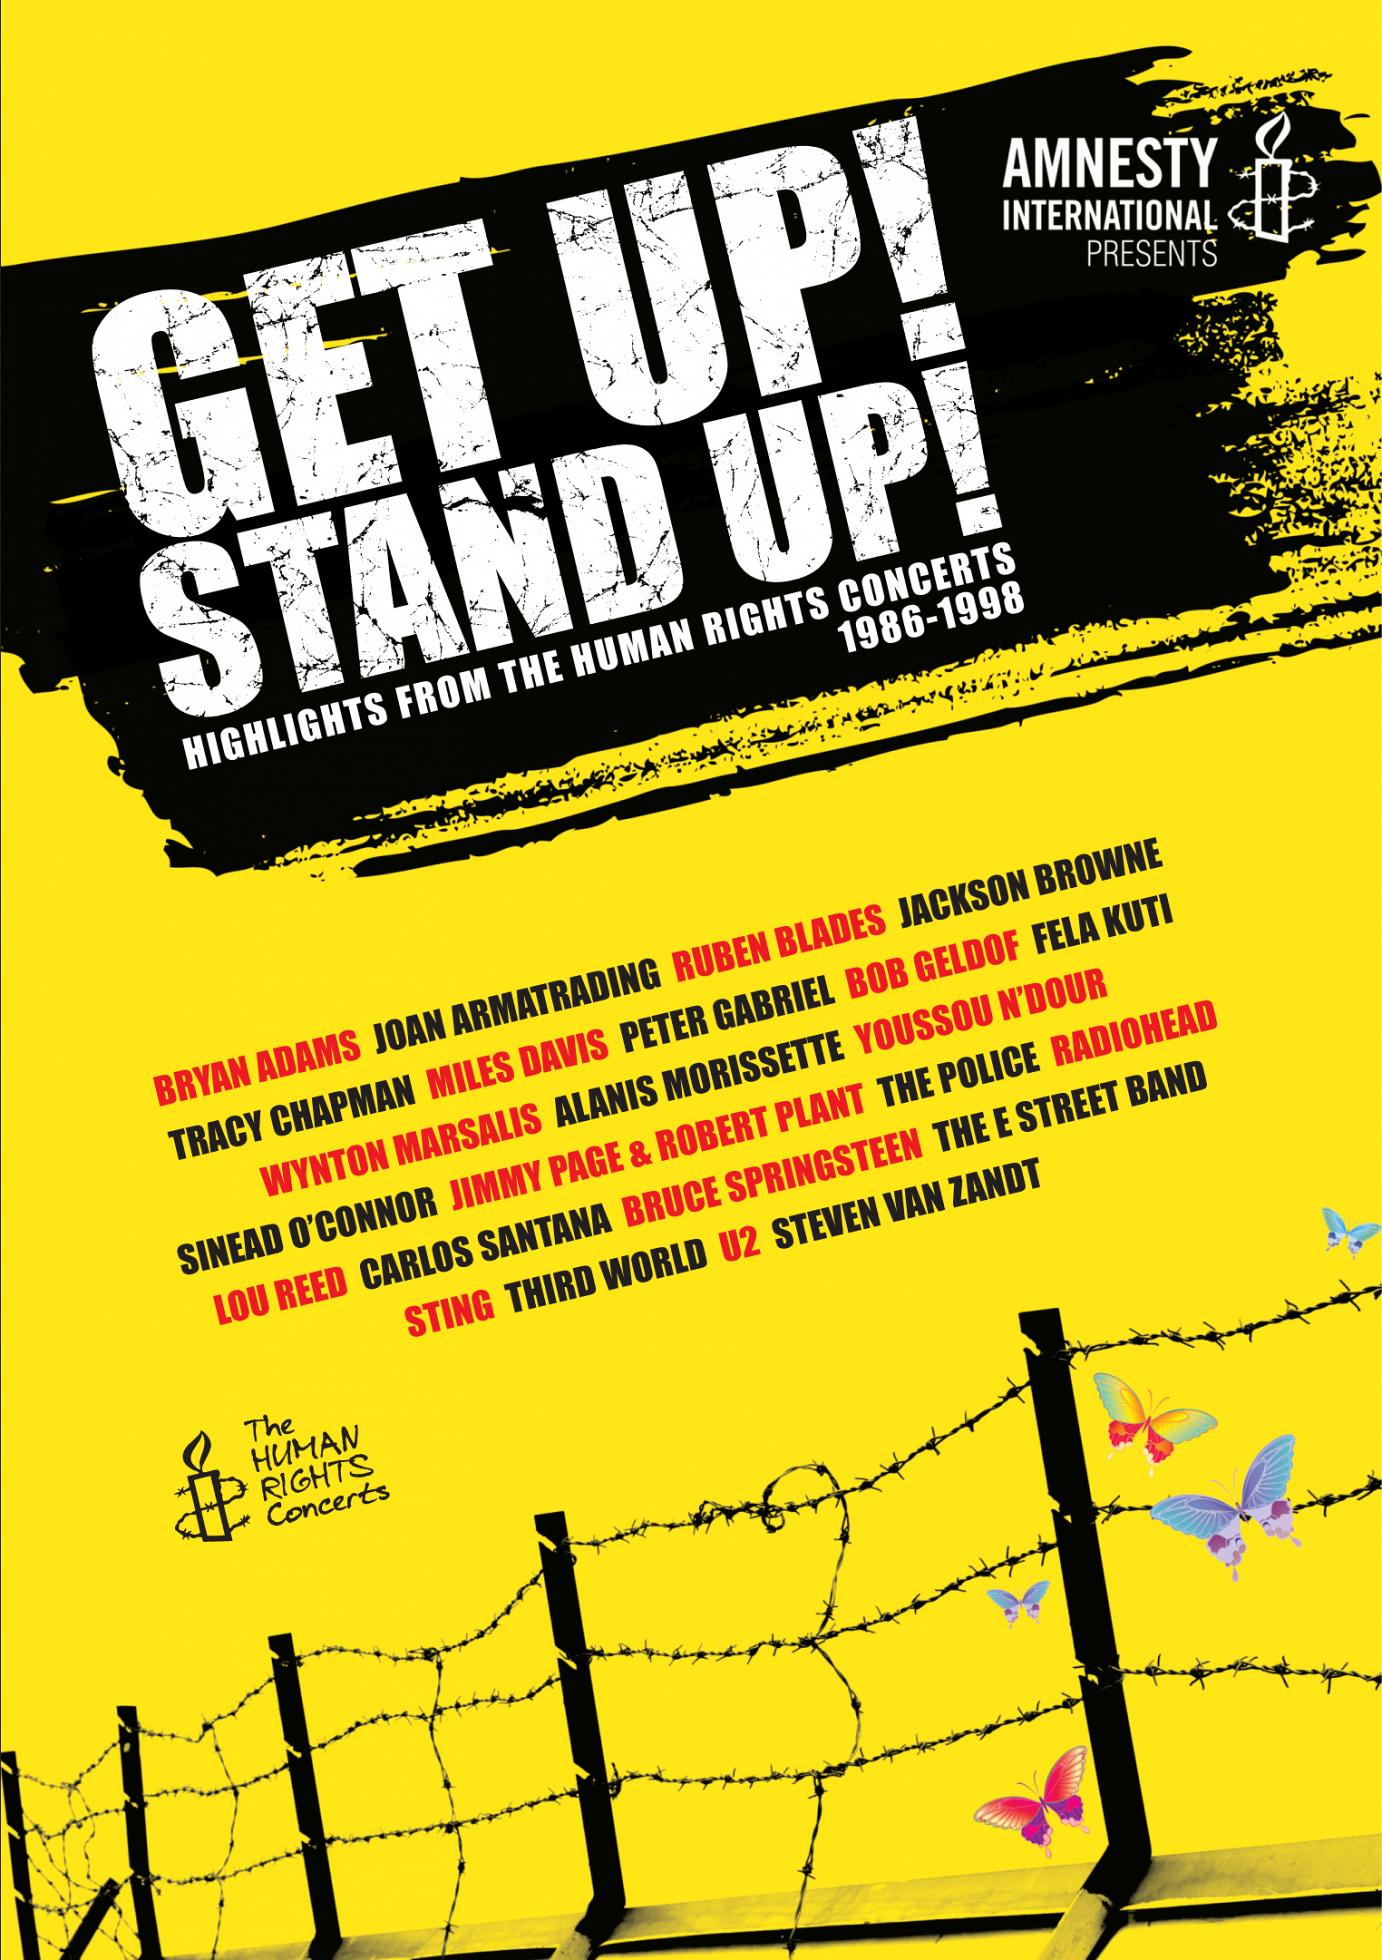 “Get Up! Stand Up!” präsentiert die Höhepunkte der Serie “The Human Rights Concerts“ zwischen 1986 und 1998